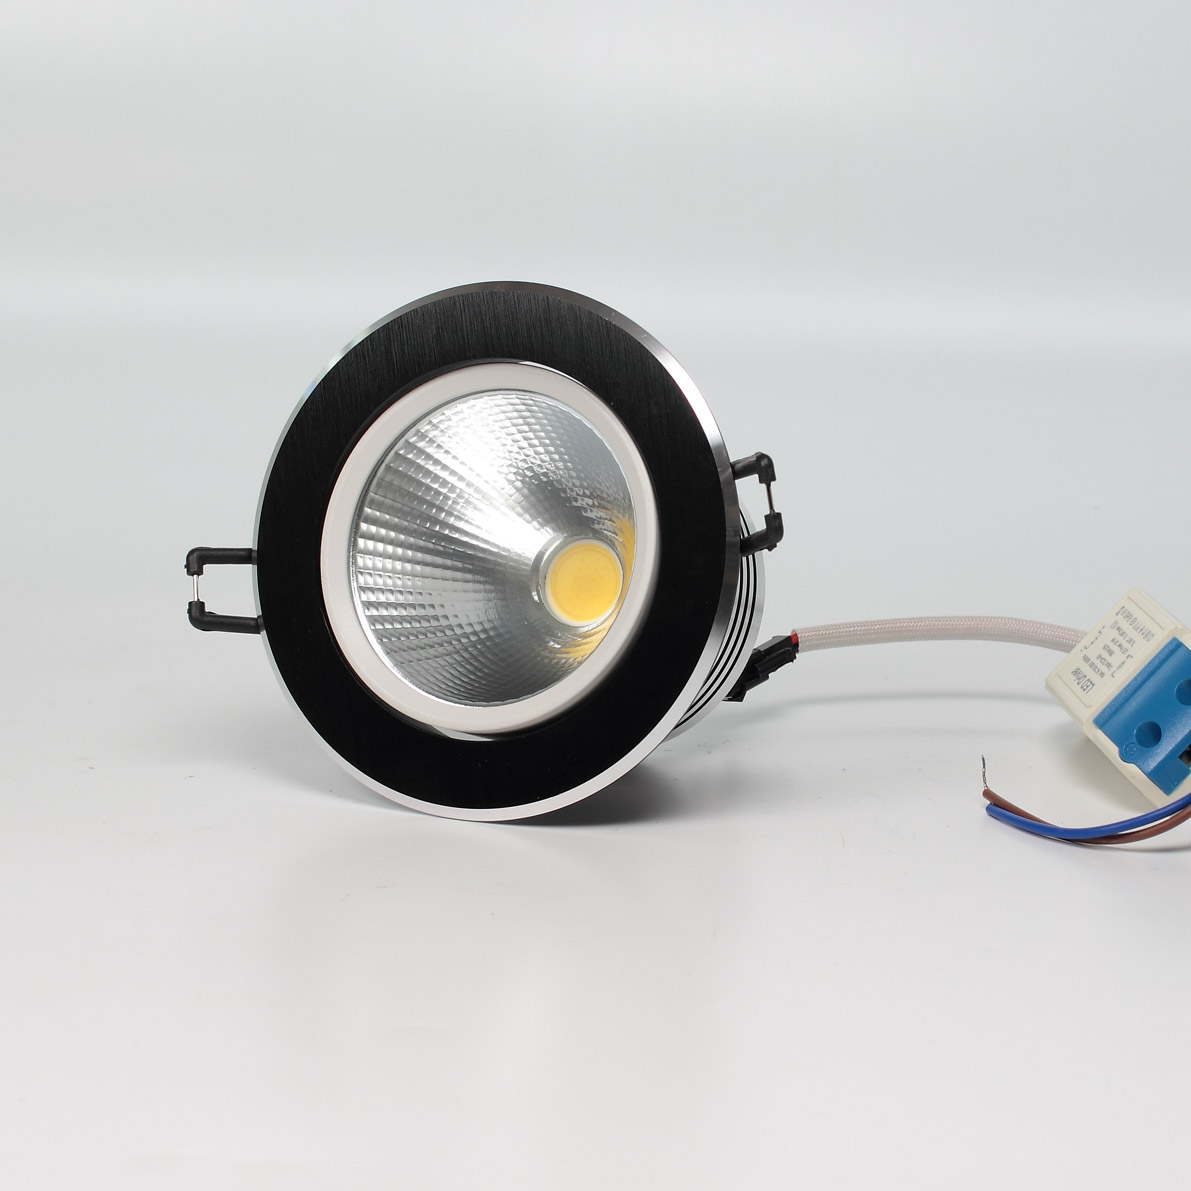 Светодиодные светильники Светодиодный светильник встраиваемый 110 series black housing BW15 (10W,220V,day white)